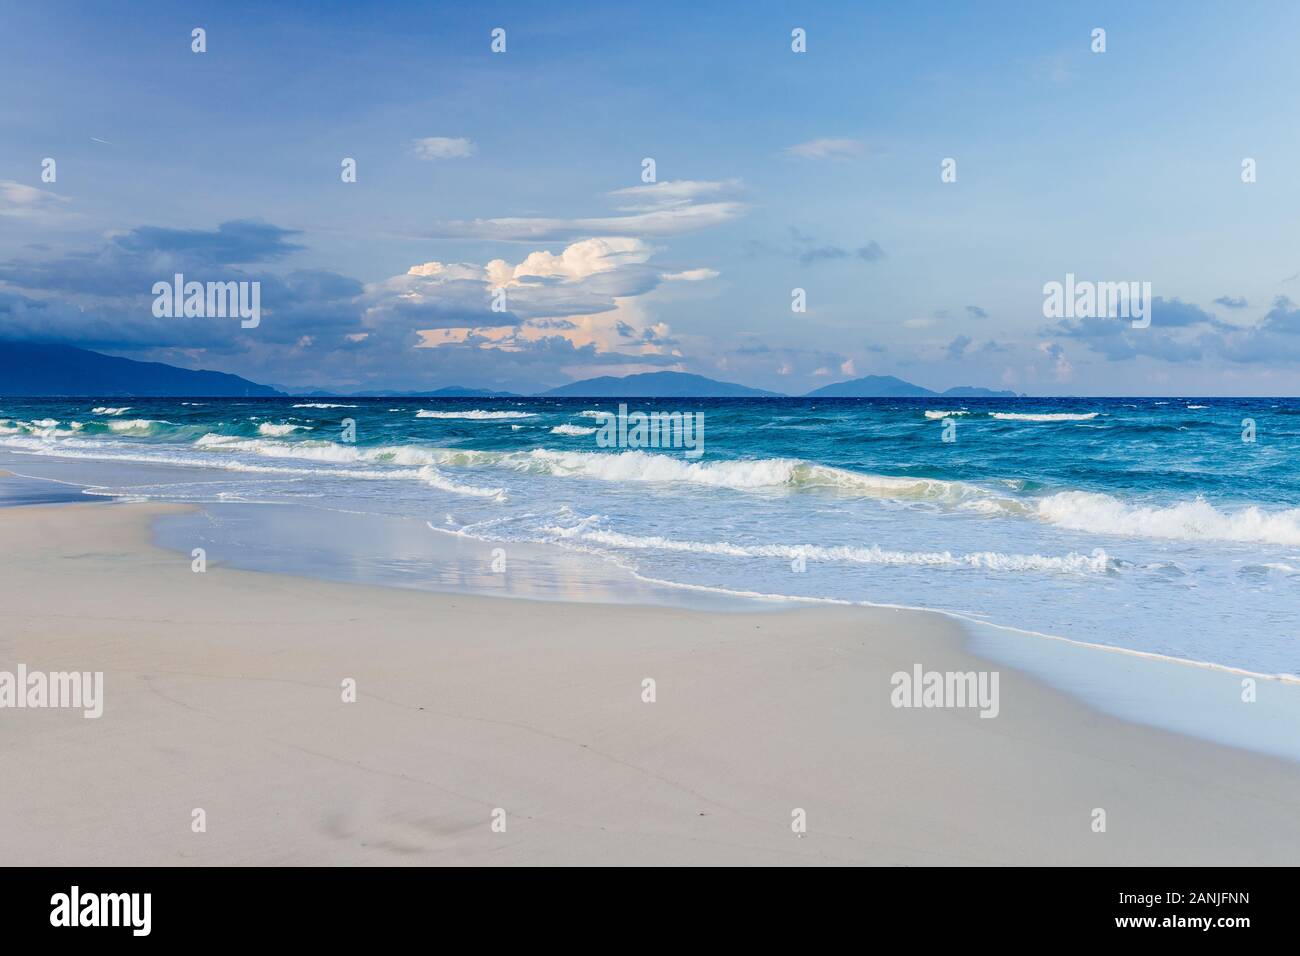 Bella, vuoto tropical spiaggia di sabbia bianca, piccole onde del mare sullo sfondo. Skyline con cielo blu e nuvole bianche, Asia Foto Stock